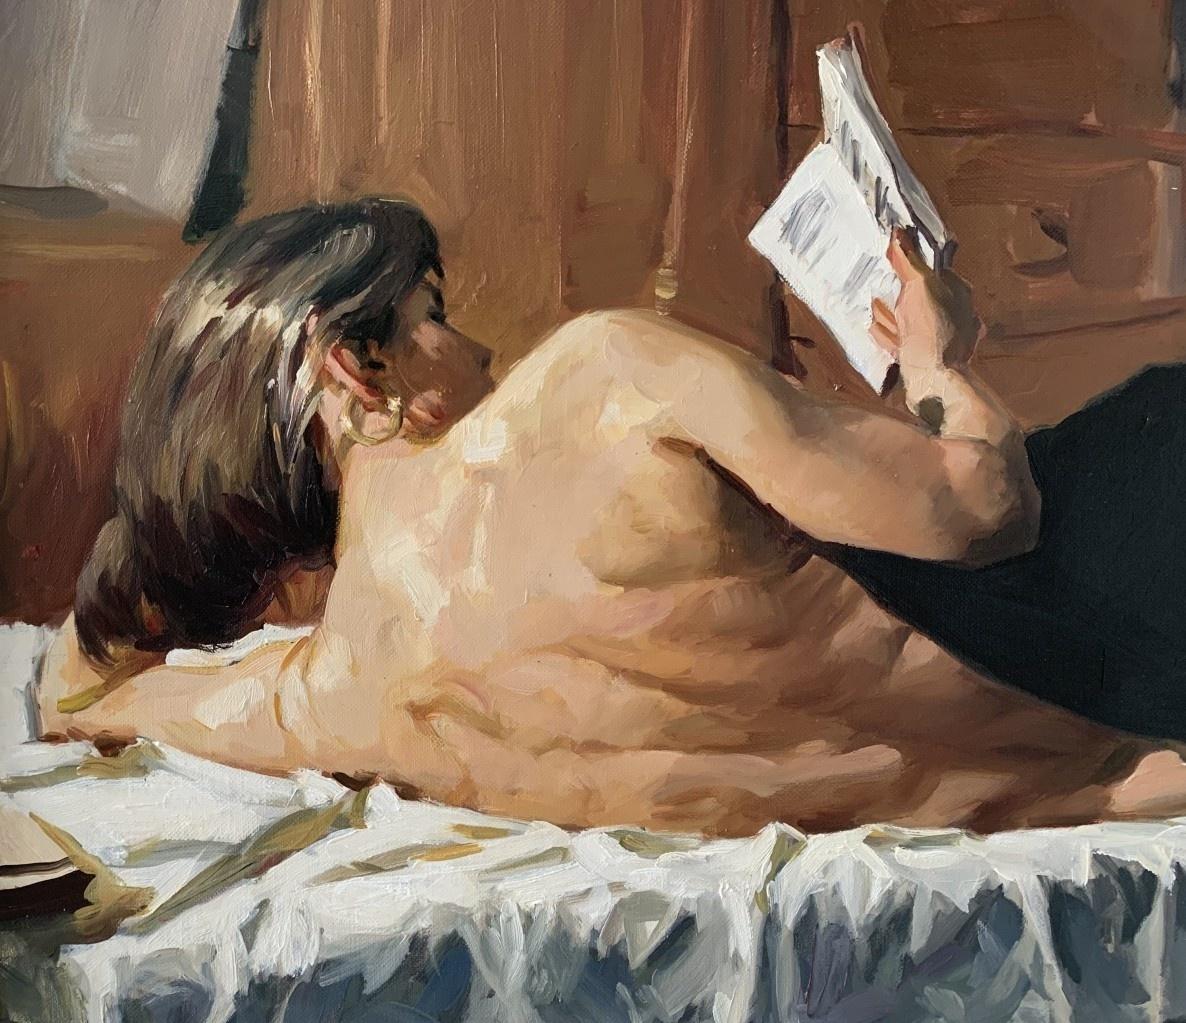 Lese – Aktporträt, Ölgemälde, realistisch, polnische Künstlerin (Realismus), Painting, von Janusz Szpyt